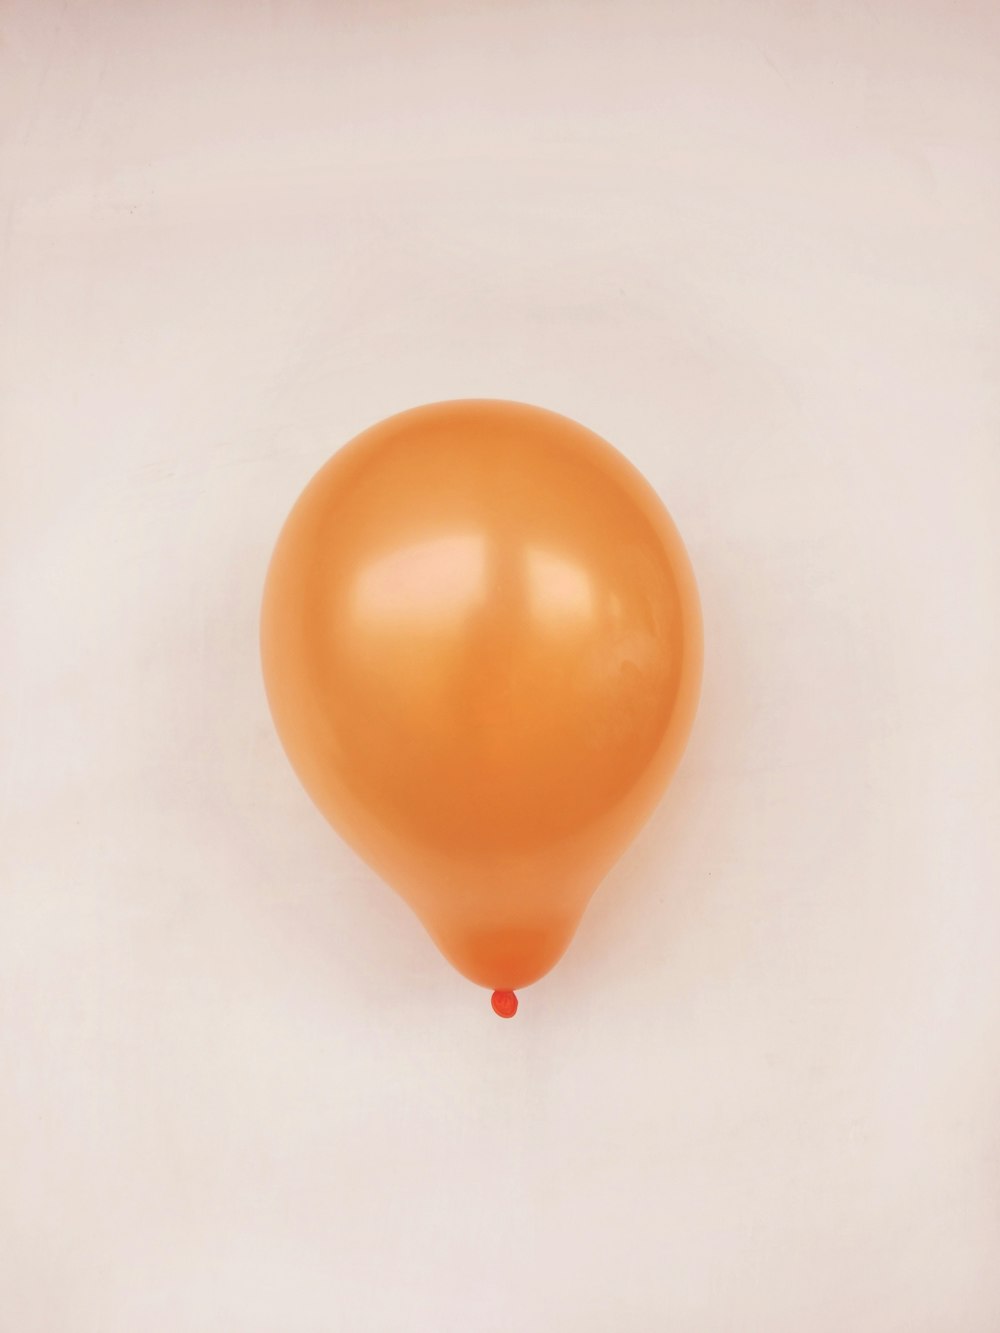 palloncino arancione su superficie bianca